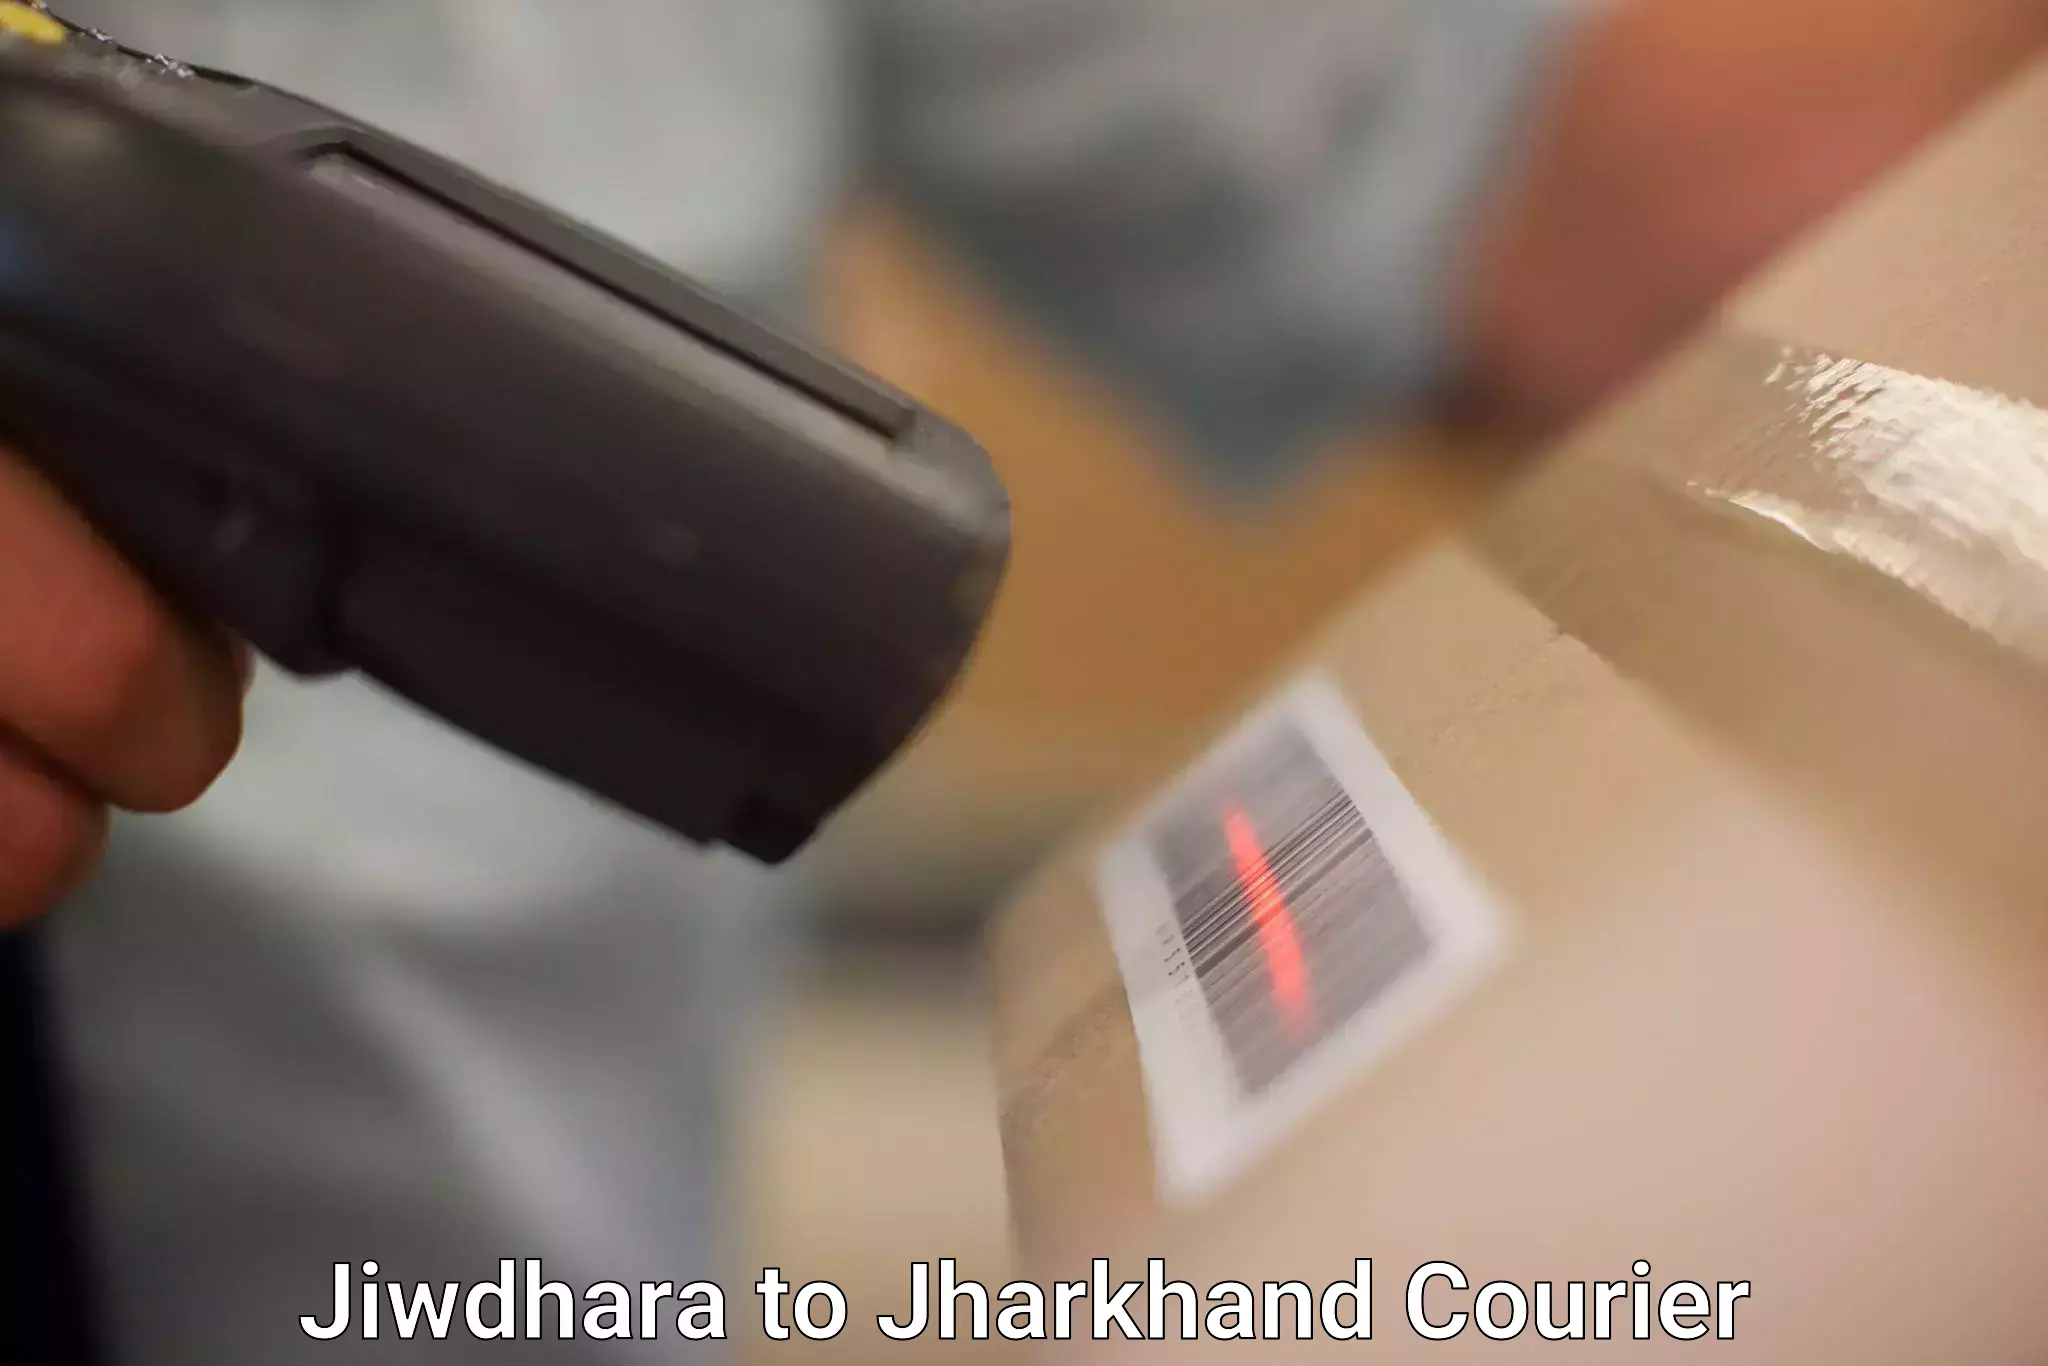 Express package handling Jiwdhara to Dhanbad